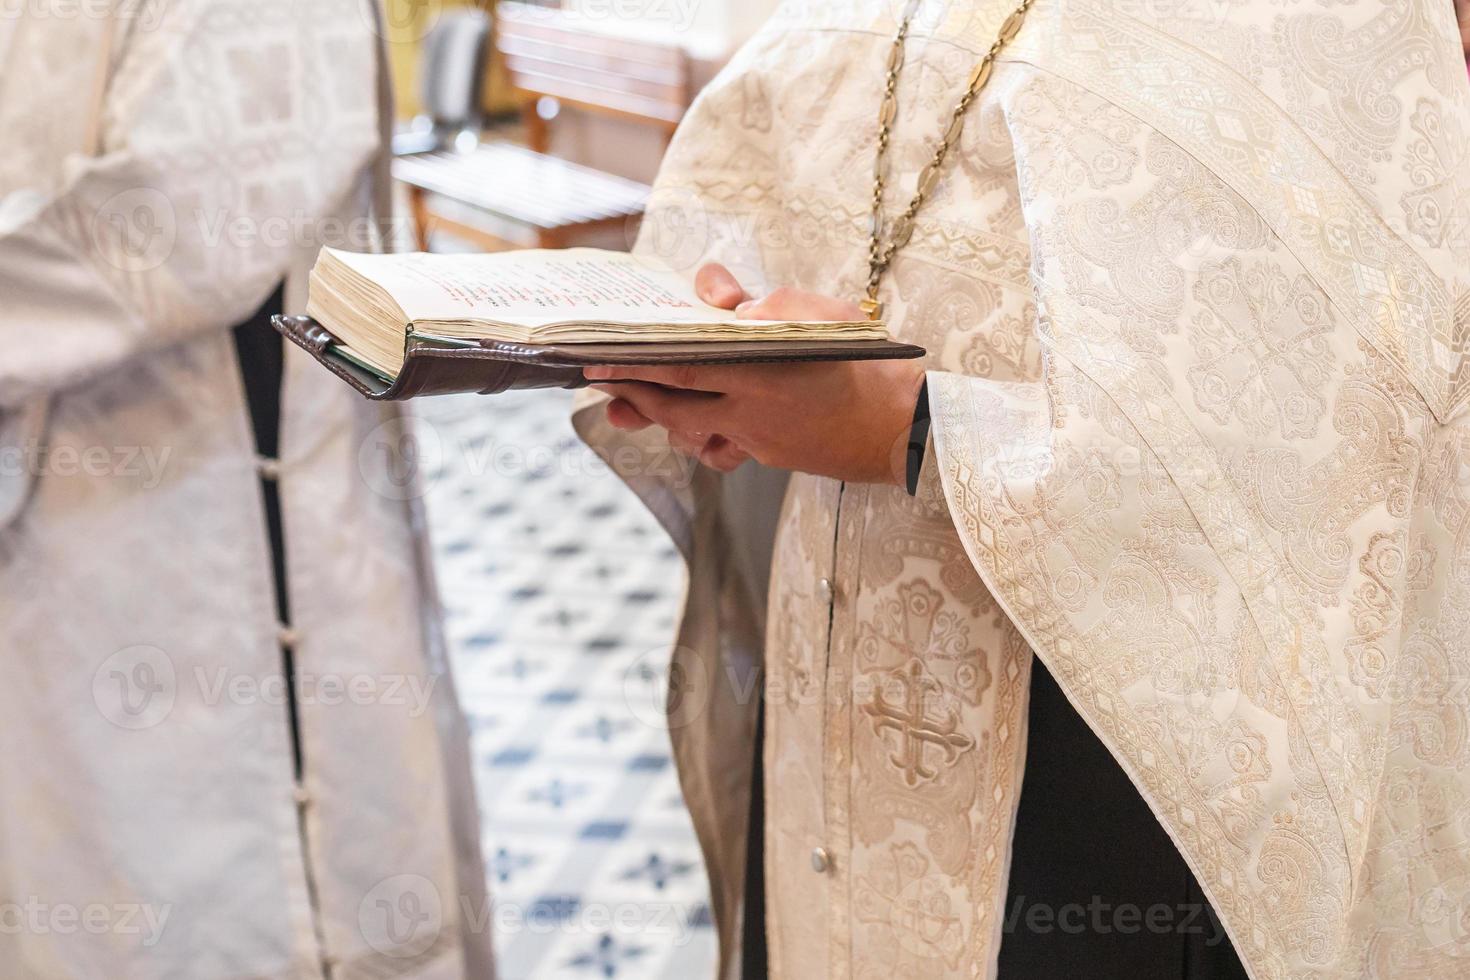 sacerdote in una chiesa ortodossa legge una preghiera dalla Bibbia durante un servizio di culto foto